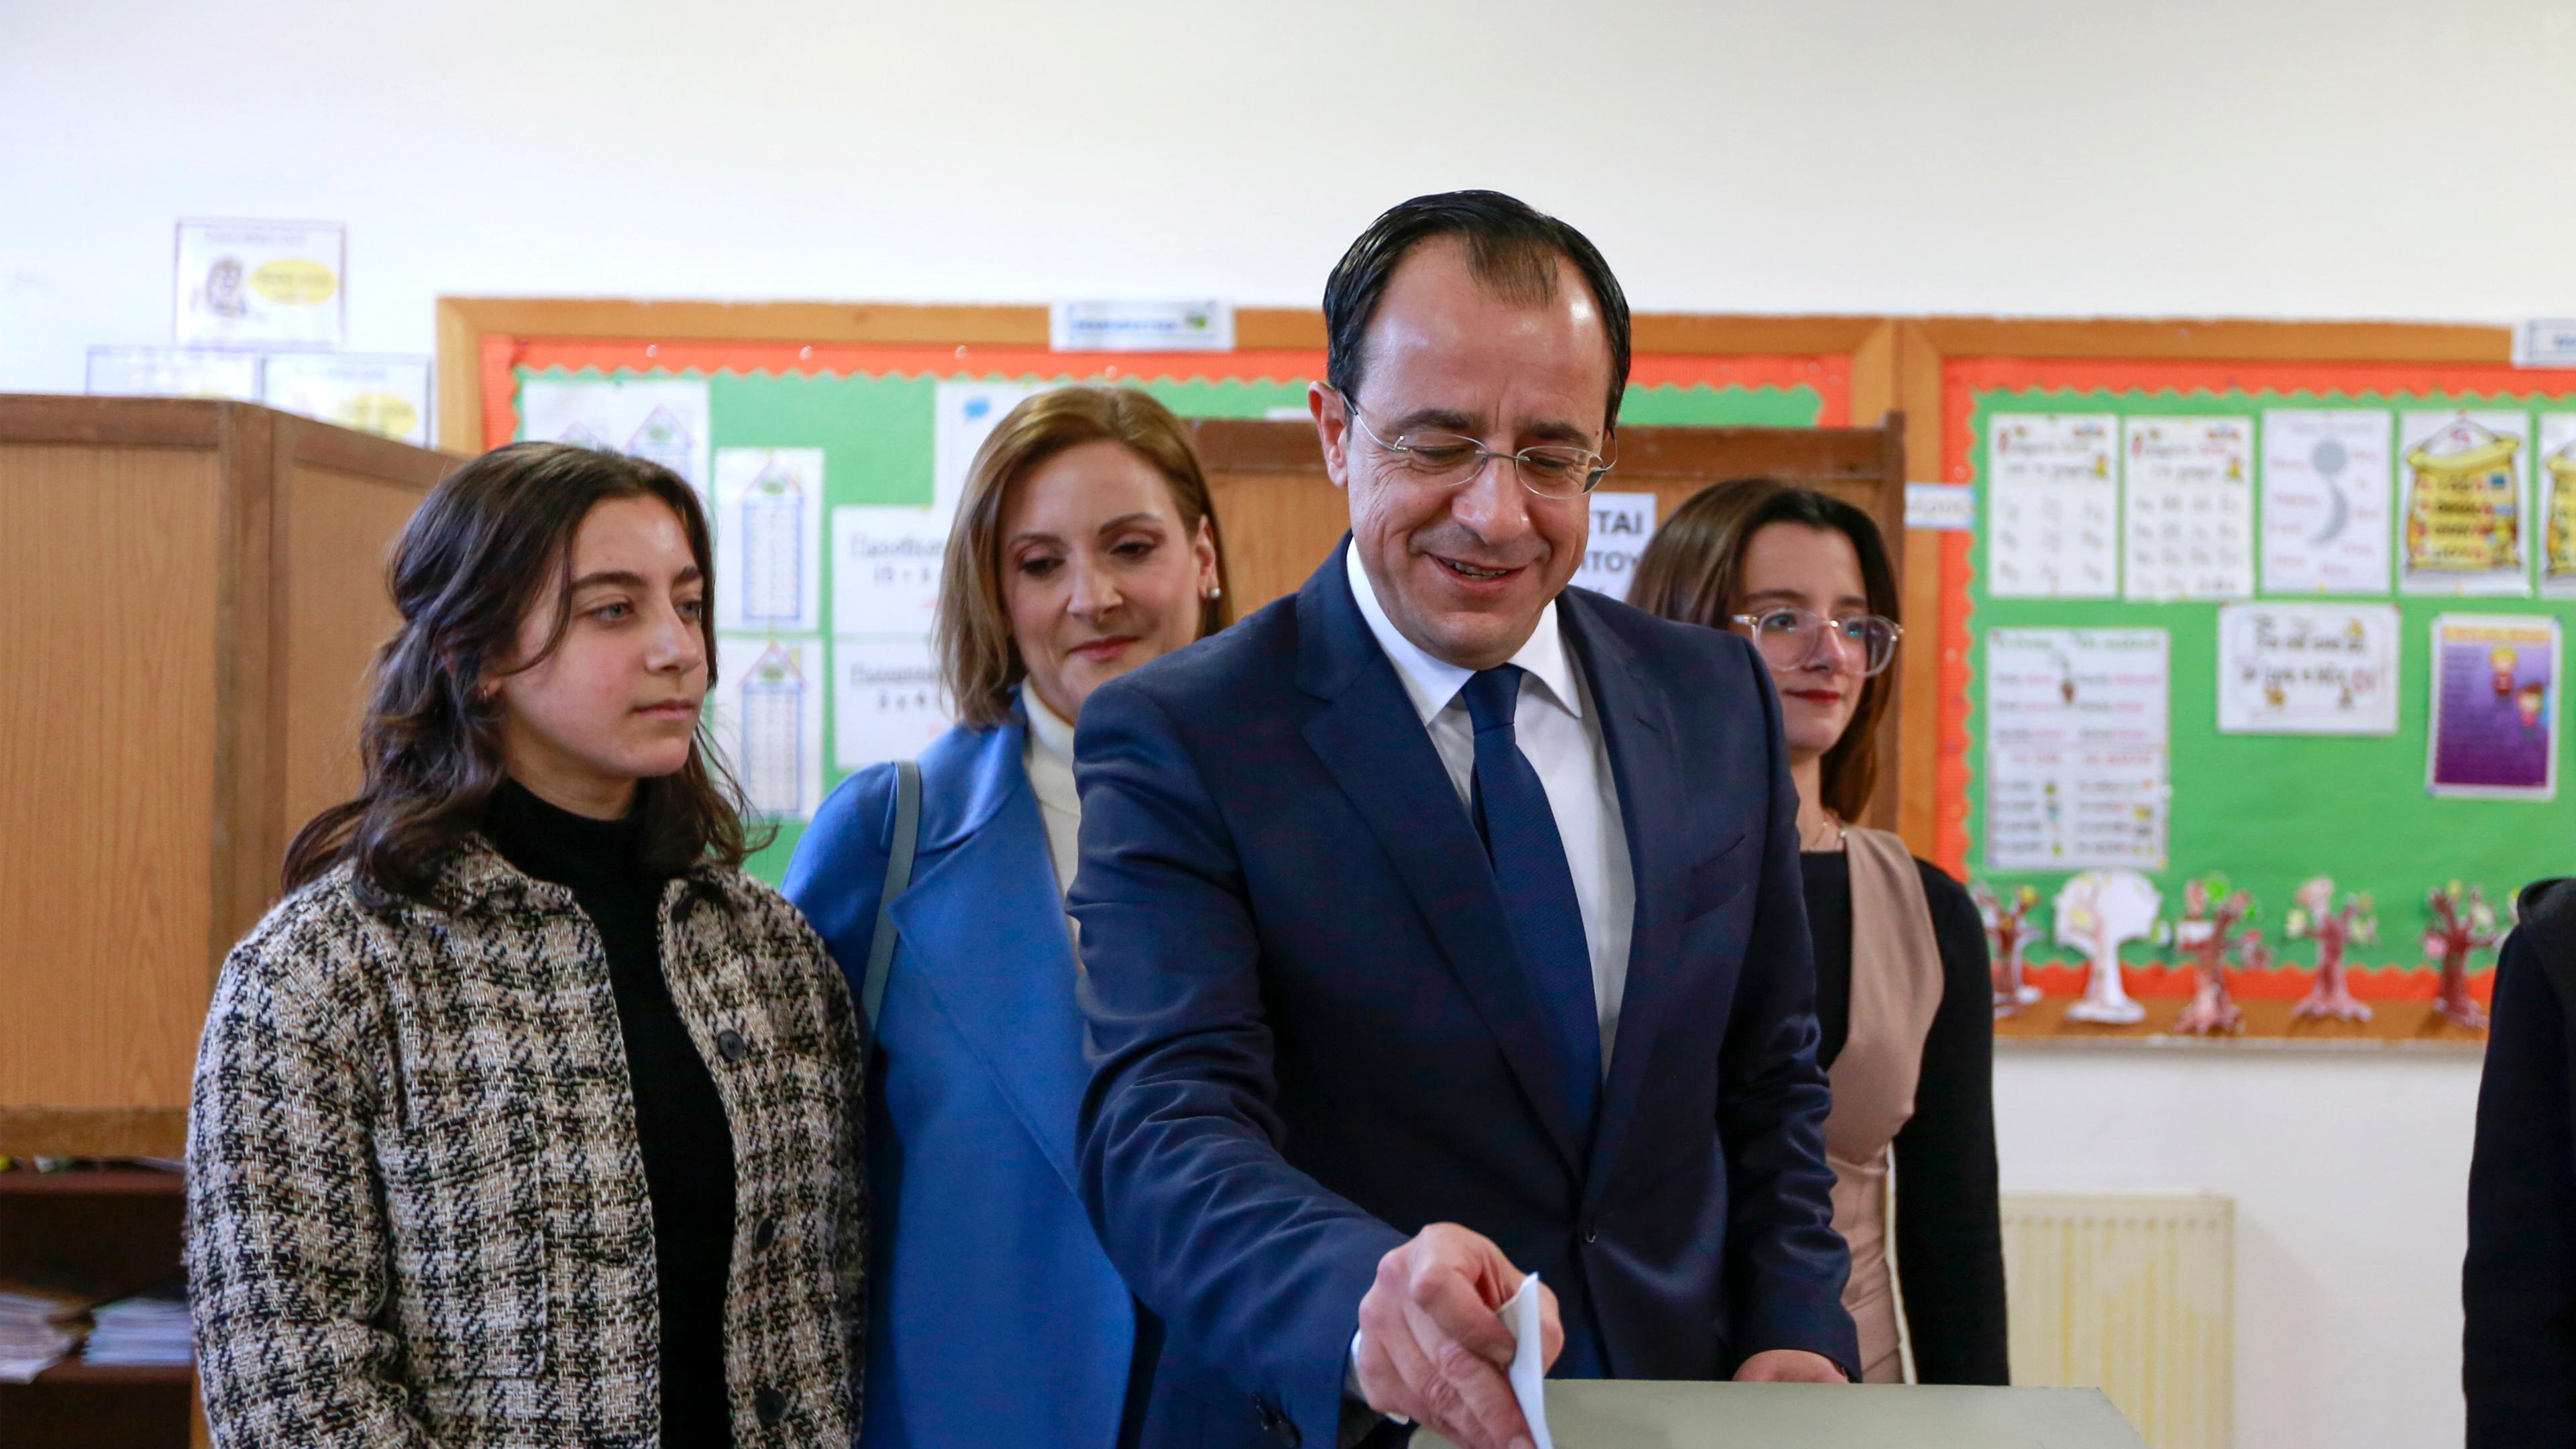 Nikos Christodoulides schiebt seinen Wahlzettel in eine Wahlurne. Um ihn herum stehen Mädchen aus seiner Familie und eine Frau.